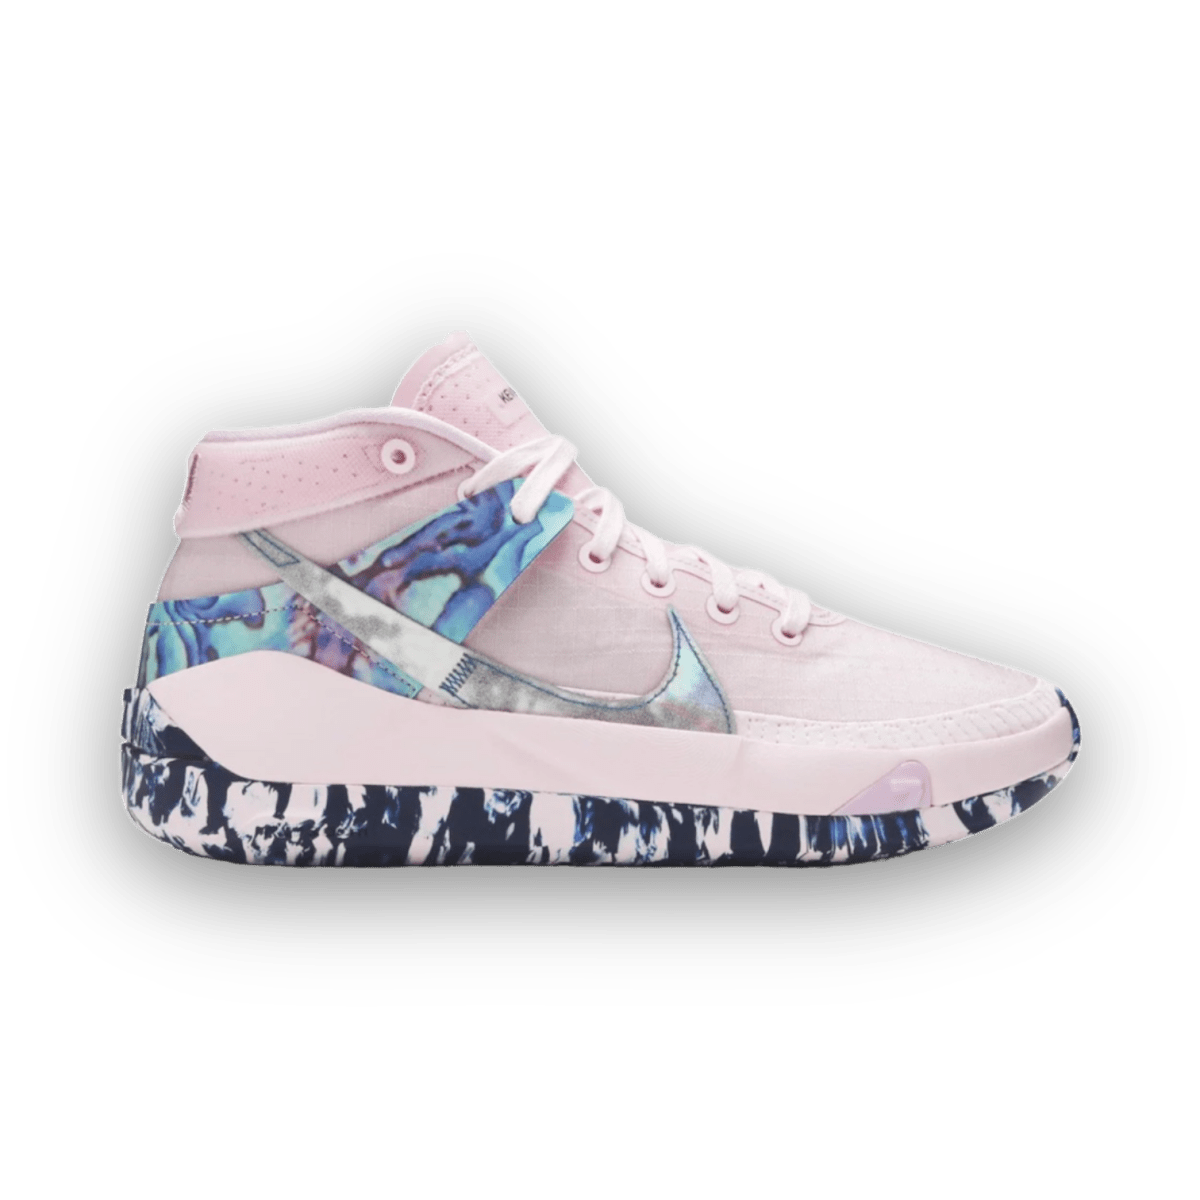 KD 13 'Aunt Pearl' - Mid Sneaker - Jawns on Fire Sneakers & Streetwear